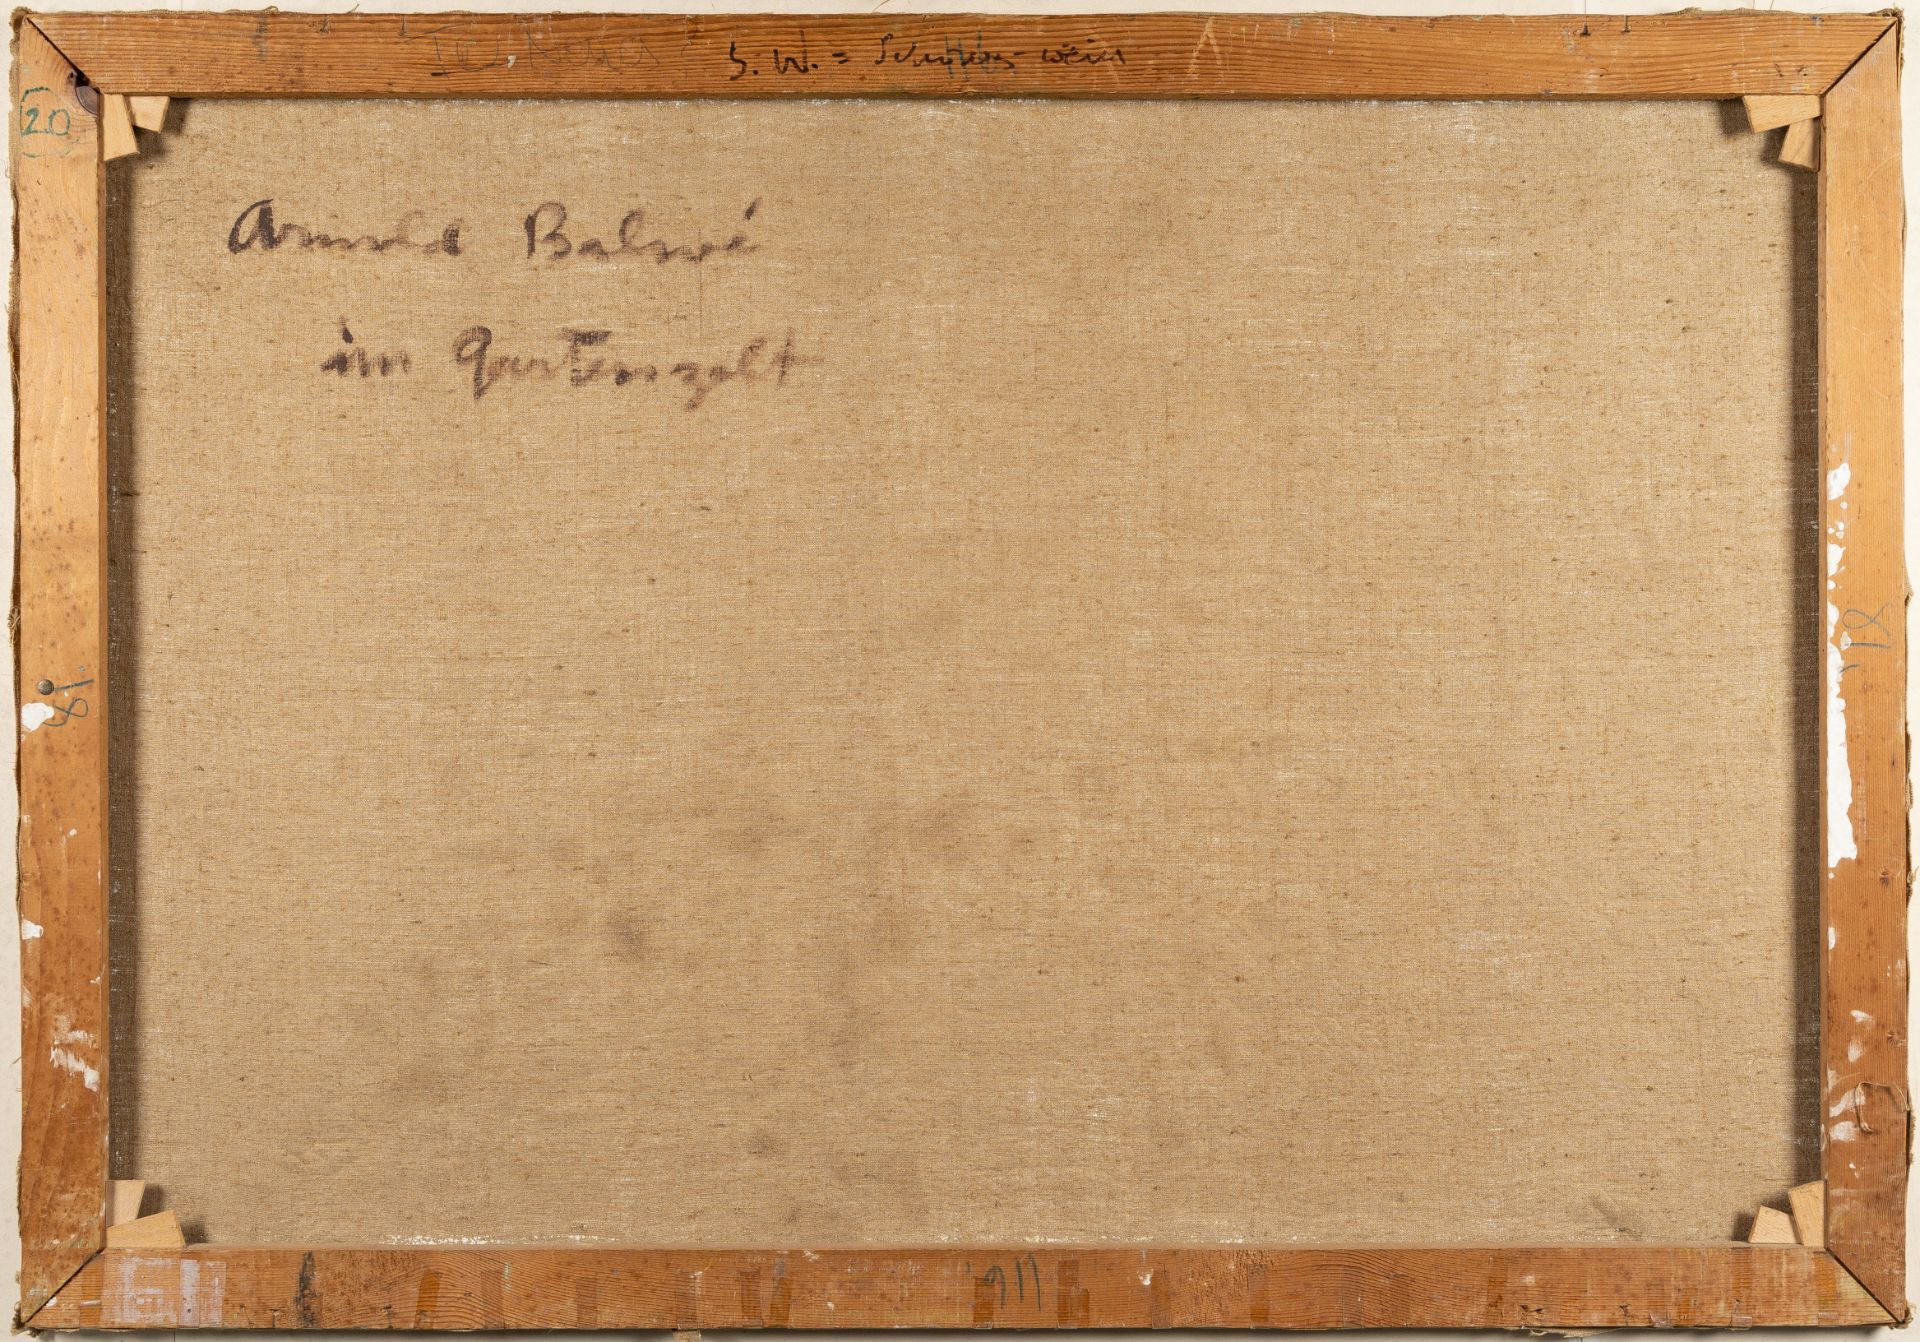 Arnold Balwé, „im Gartenzelt“.Oil on canvas. (1949/50). Ca. 81 x 116 cm. Signed lower left. Titled - Image 3 of 4